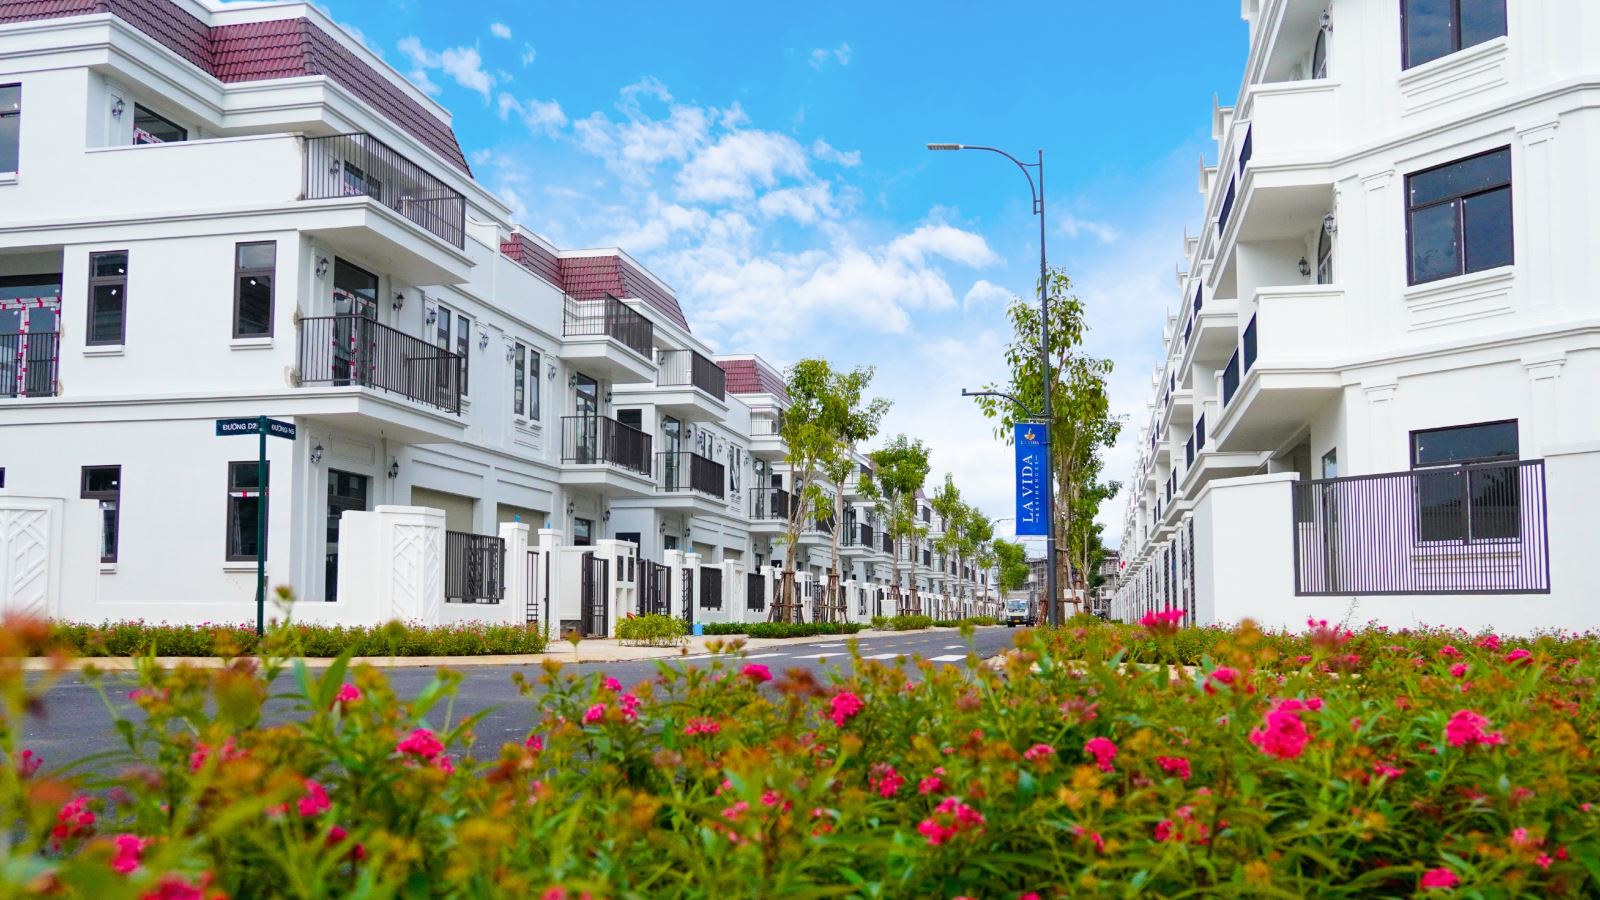 La Vida Residences đã và đang bàn giao nhà cho hàng nghìn khách hàng để sớm an cư trong khu đô thị kiểu mẫu.